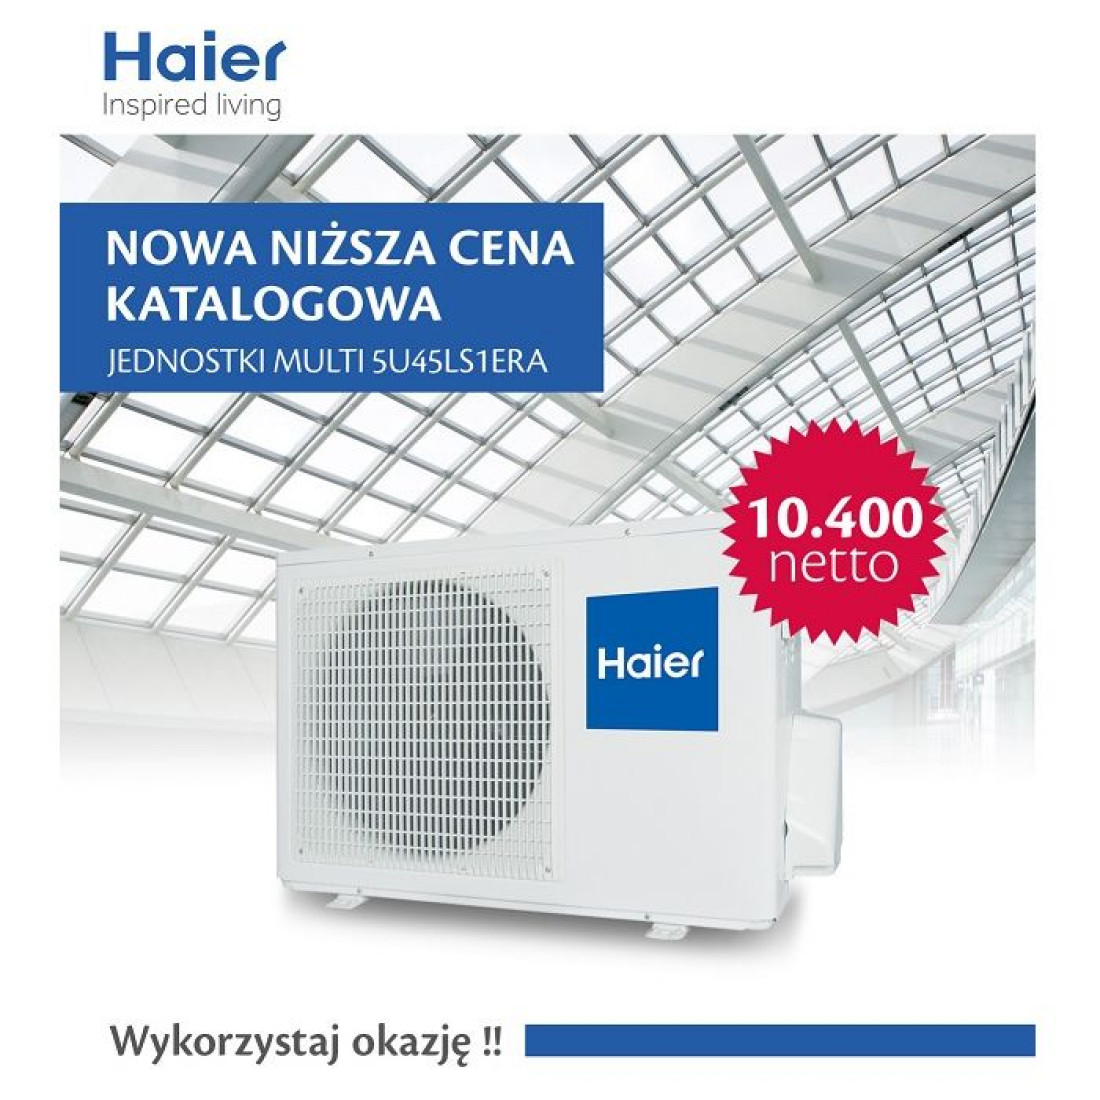 Nowa niższa cena na jednostkę multi 5U45LS1ERA firmy Haier